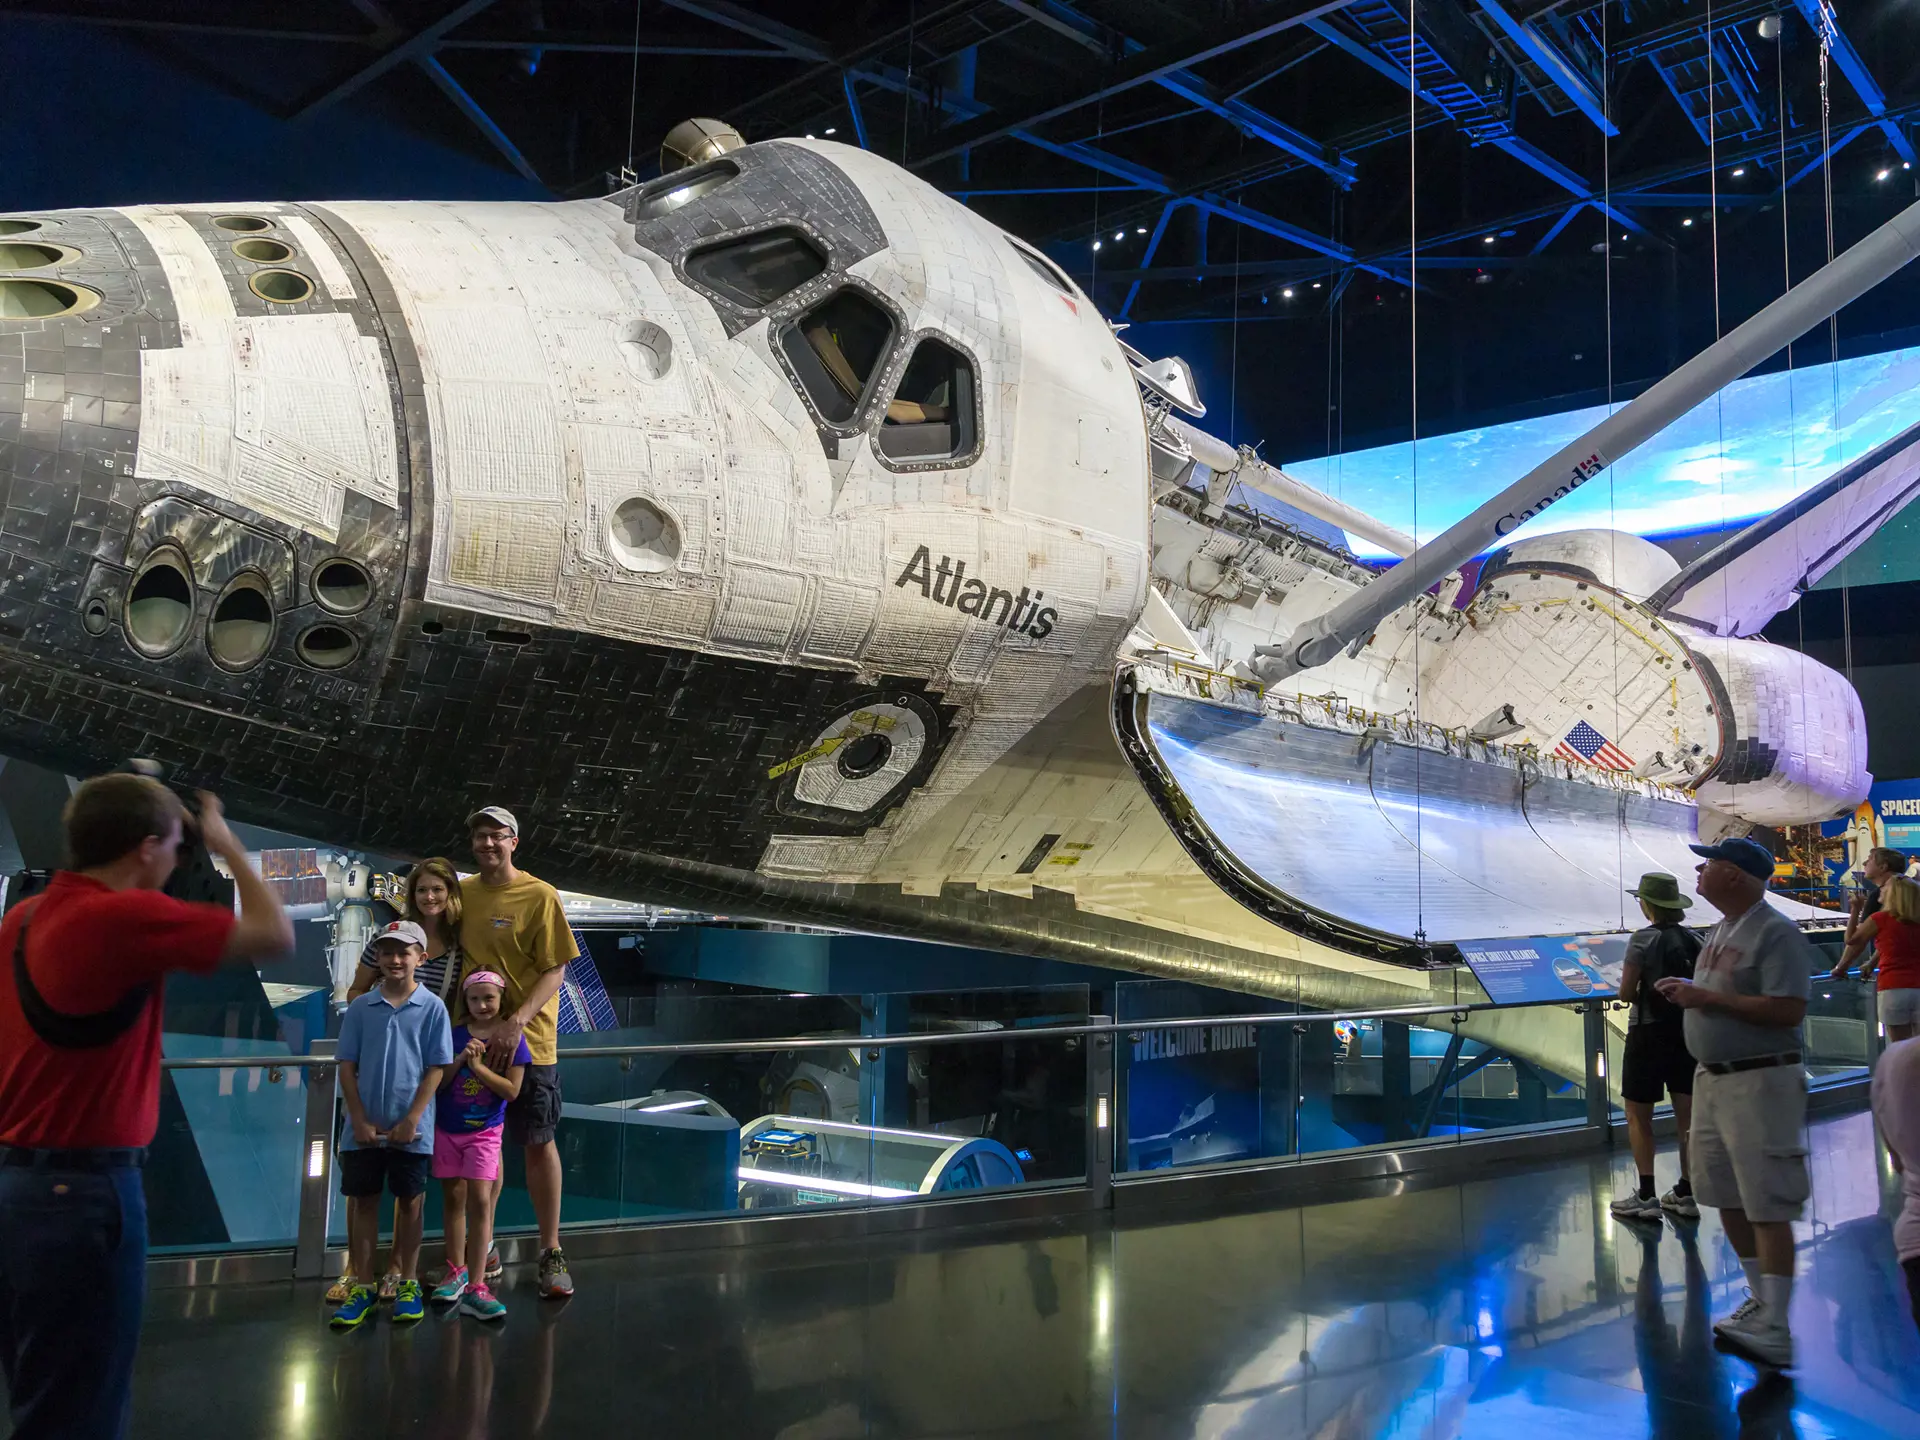 KENNEDY SPACE CENTER - Tag til Kennedy Space Center og få et indblik i astronauternes liv og den amerikanske rumhistorie.